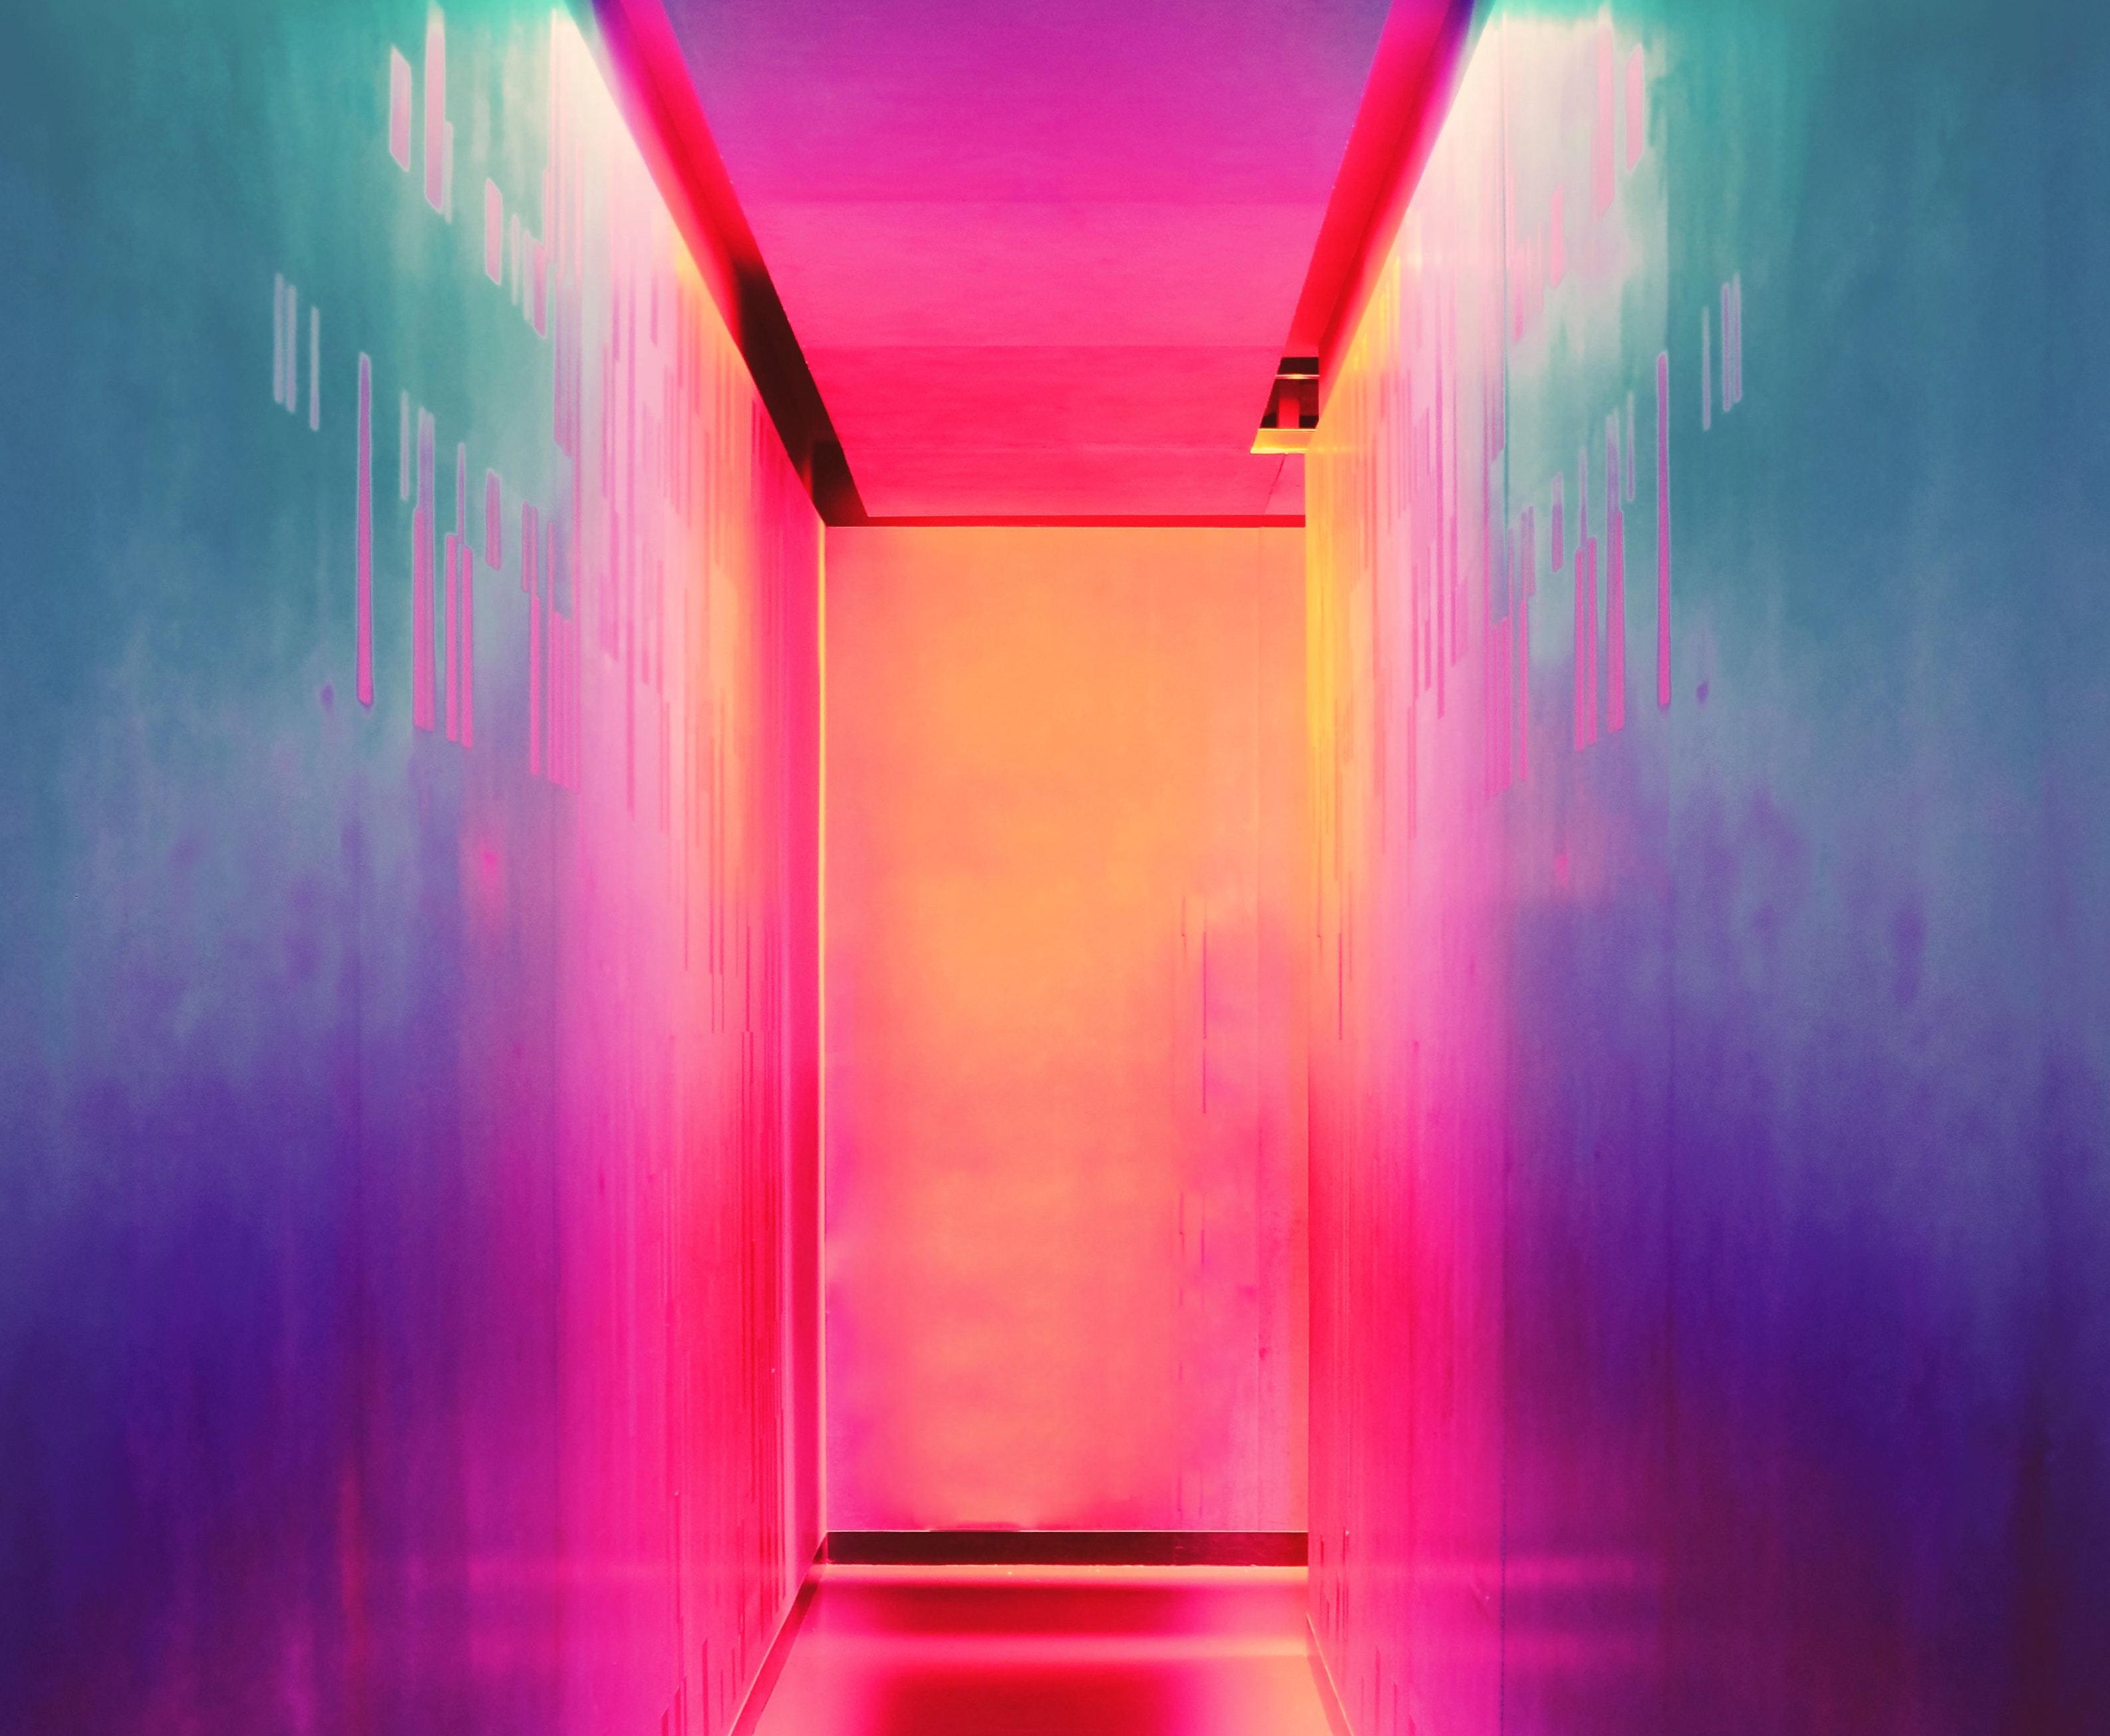 Hallway with neon lighting